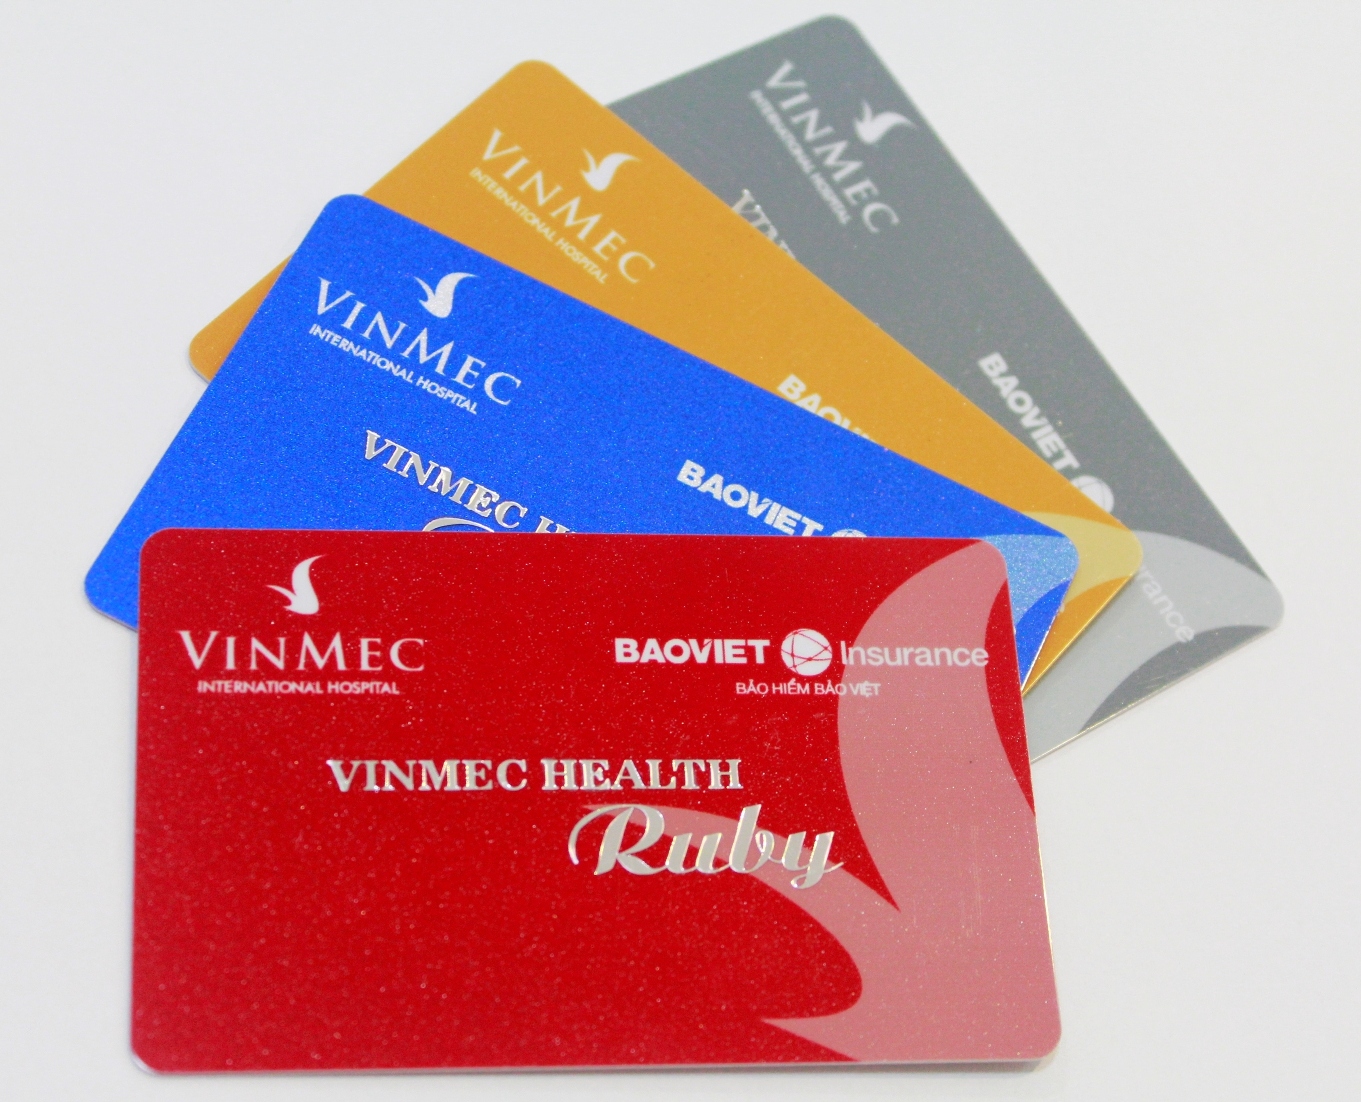 Gói bảo hiểm sức khỏe cao cấp của Vinmec là sự lựa chọn lý tưởng cho nhiều gia đình nhờ các chính sách hấp dẫn cho khách hàng